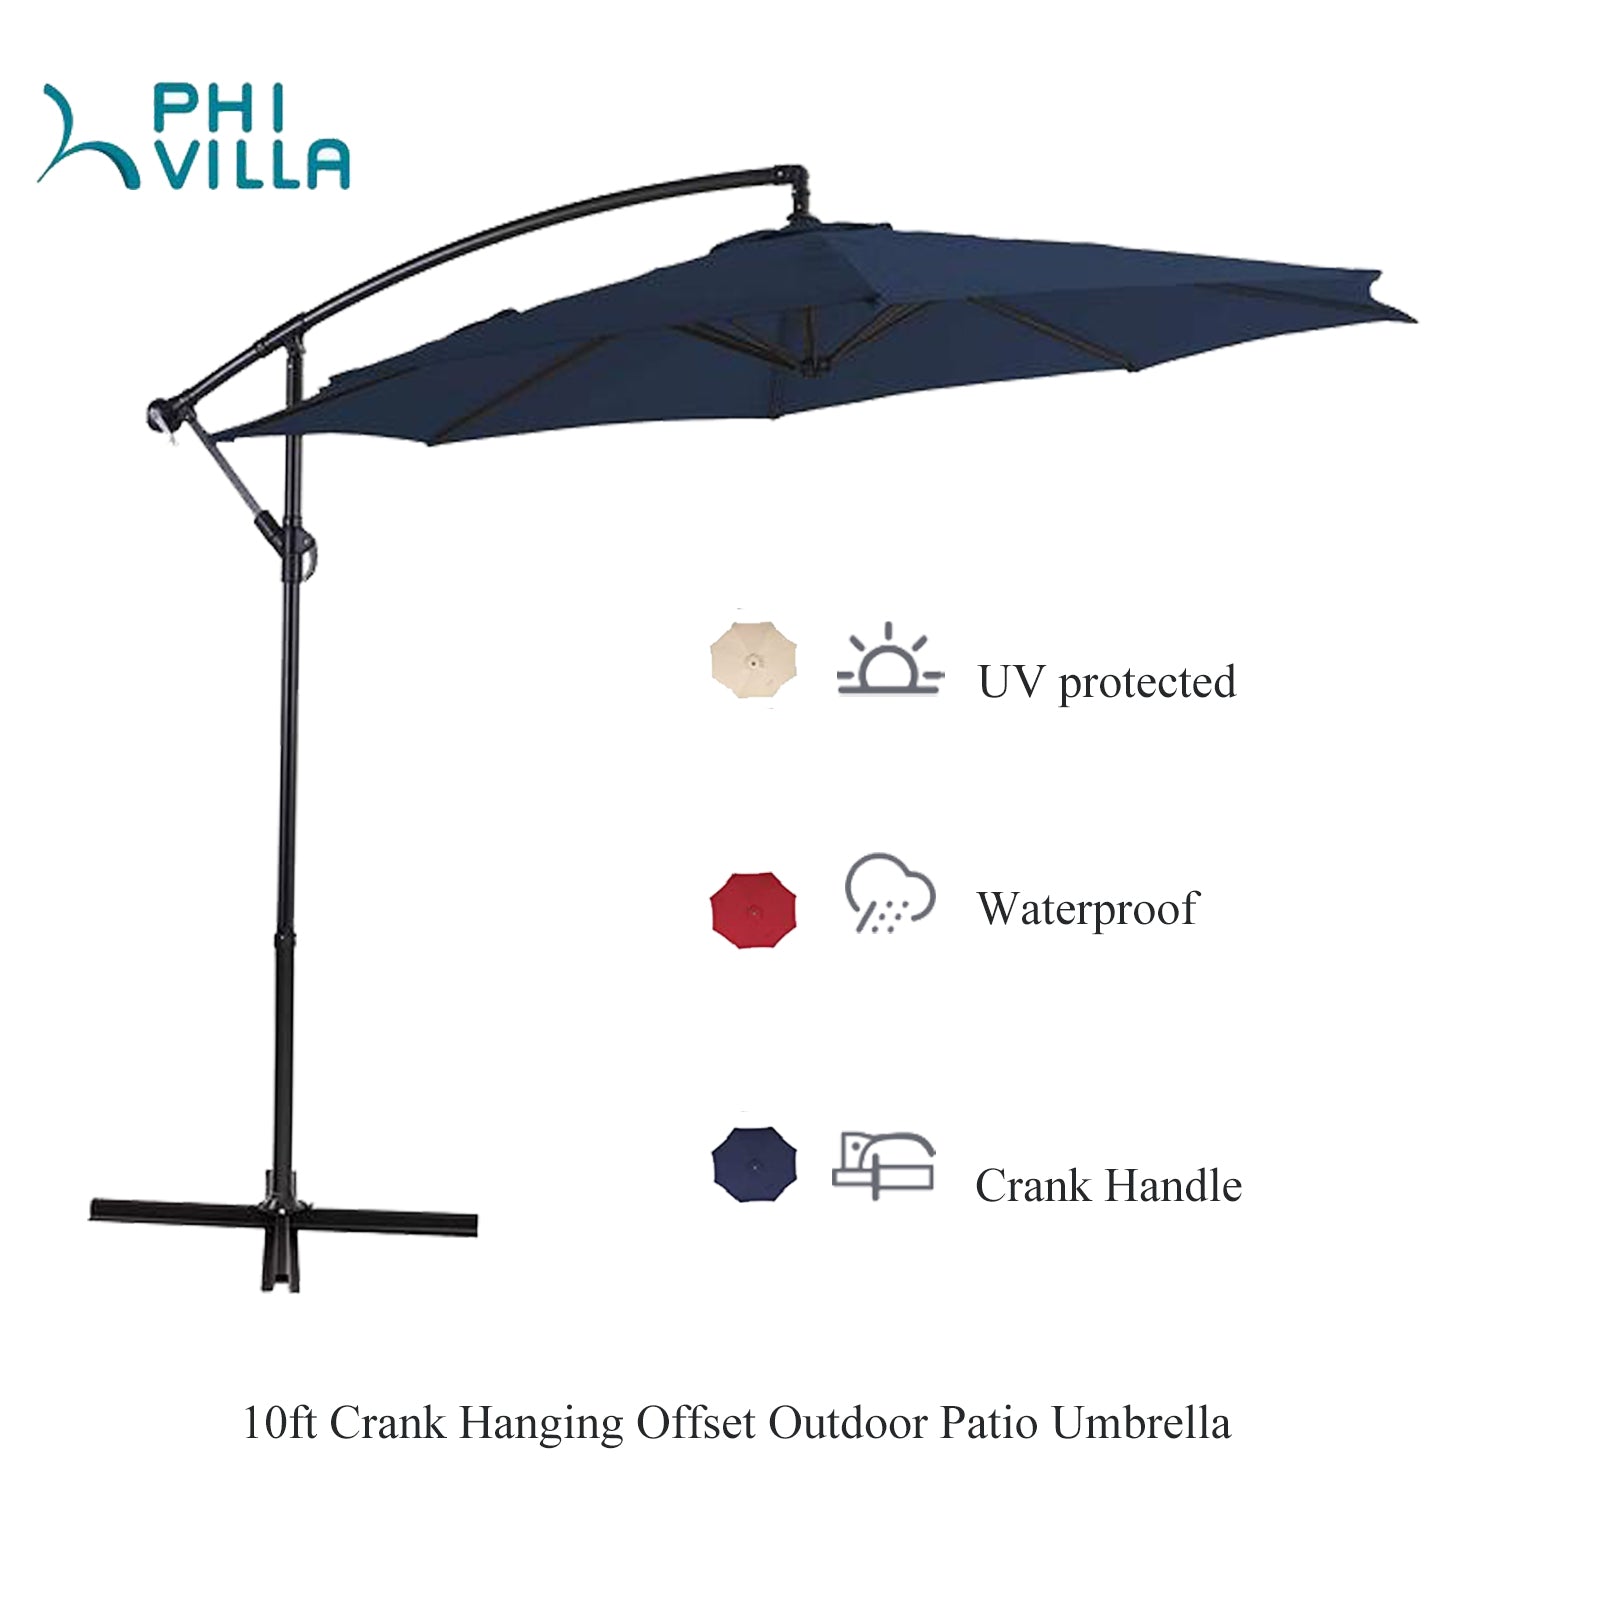 Sophia & William 10ft Crank Hanging Offset Outdoor Patio Umbrella